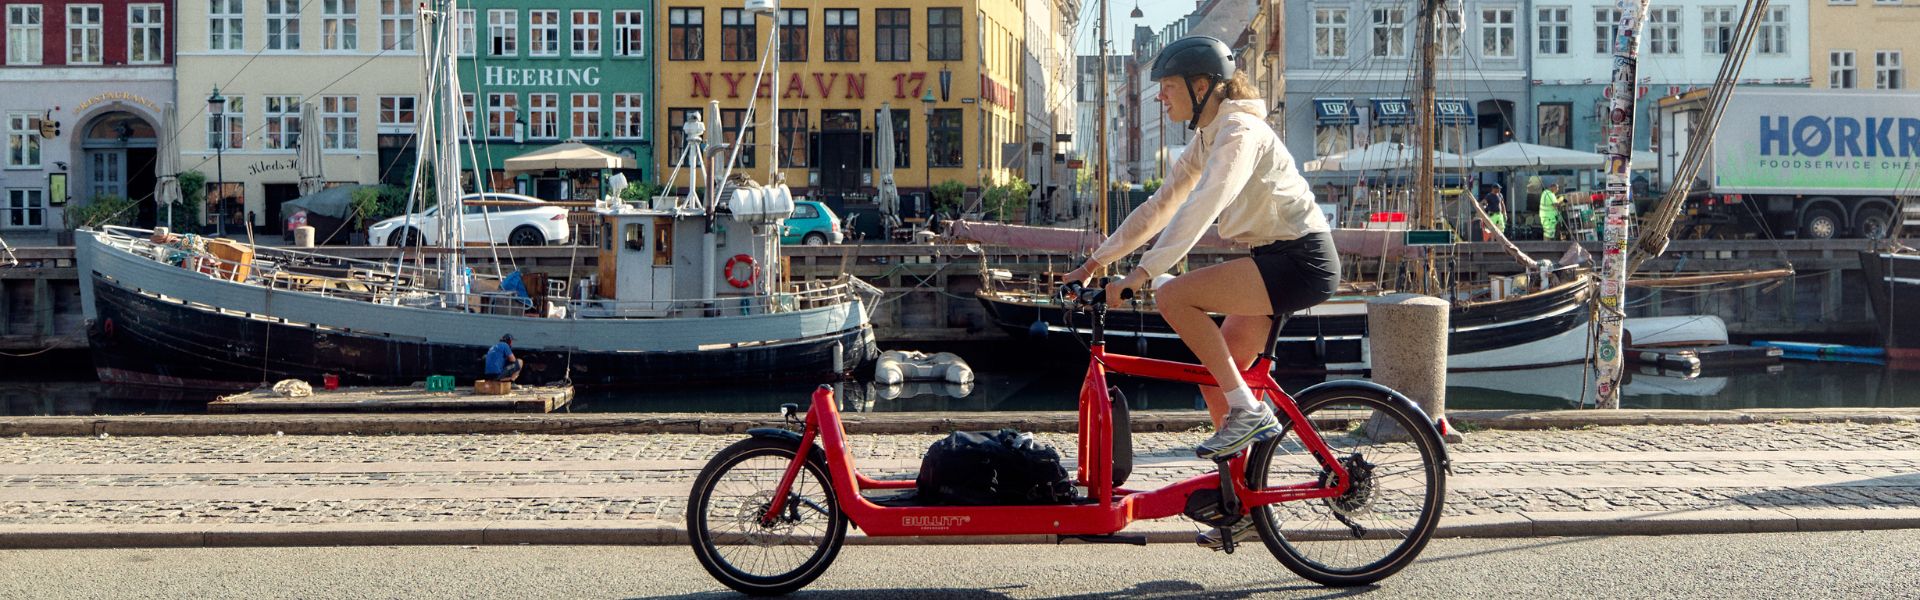 Kopenhagen - fietsen in de stad